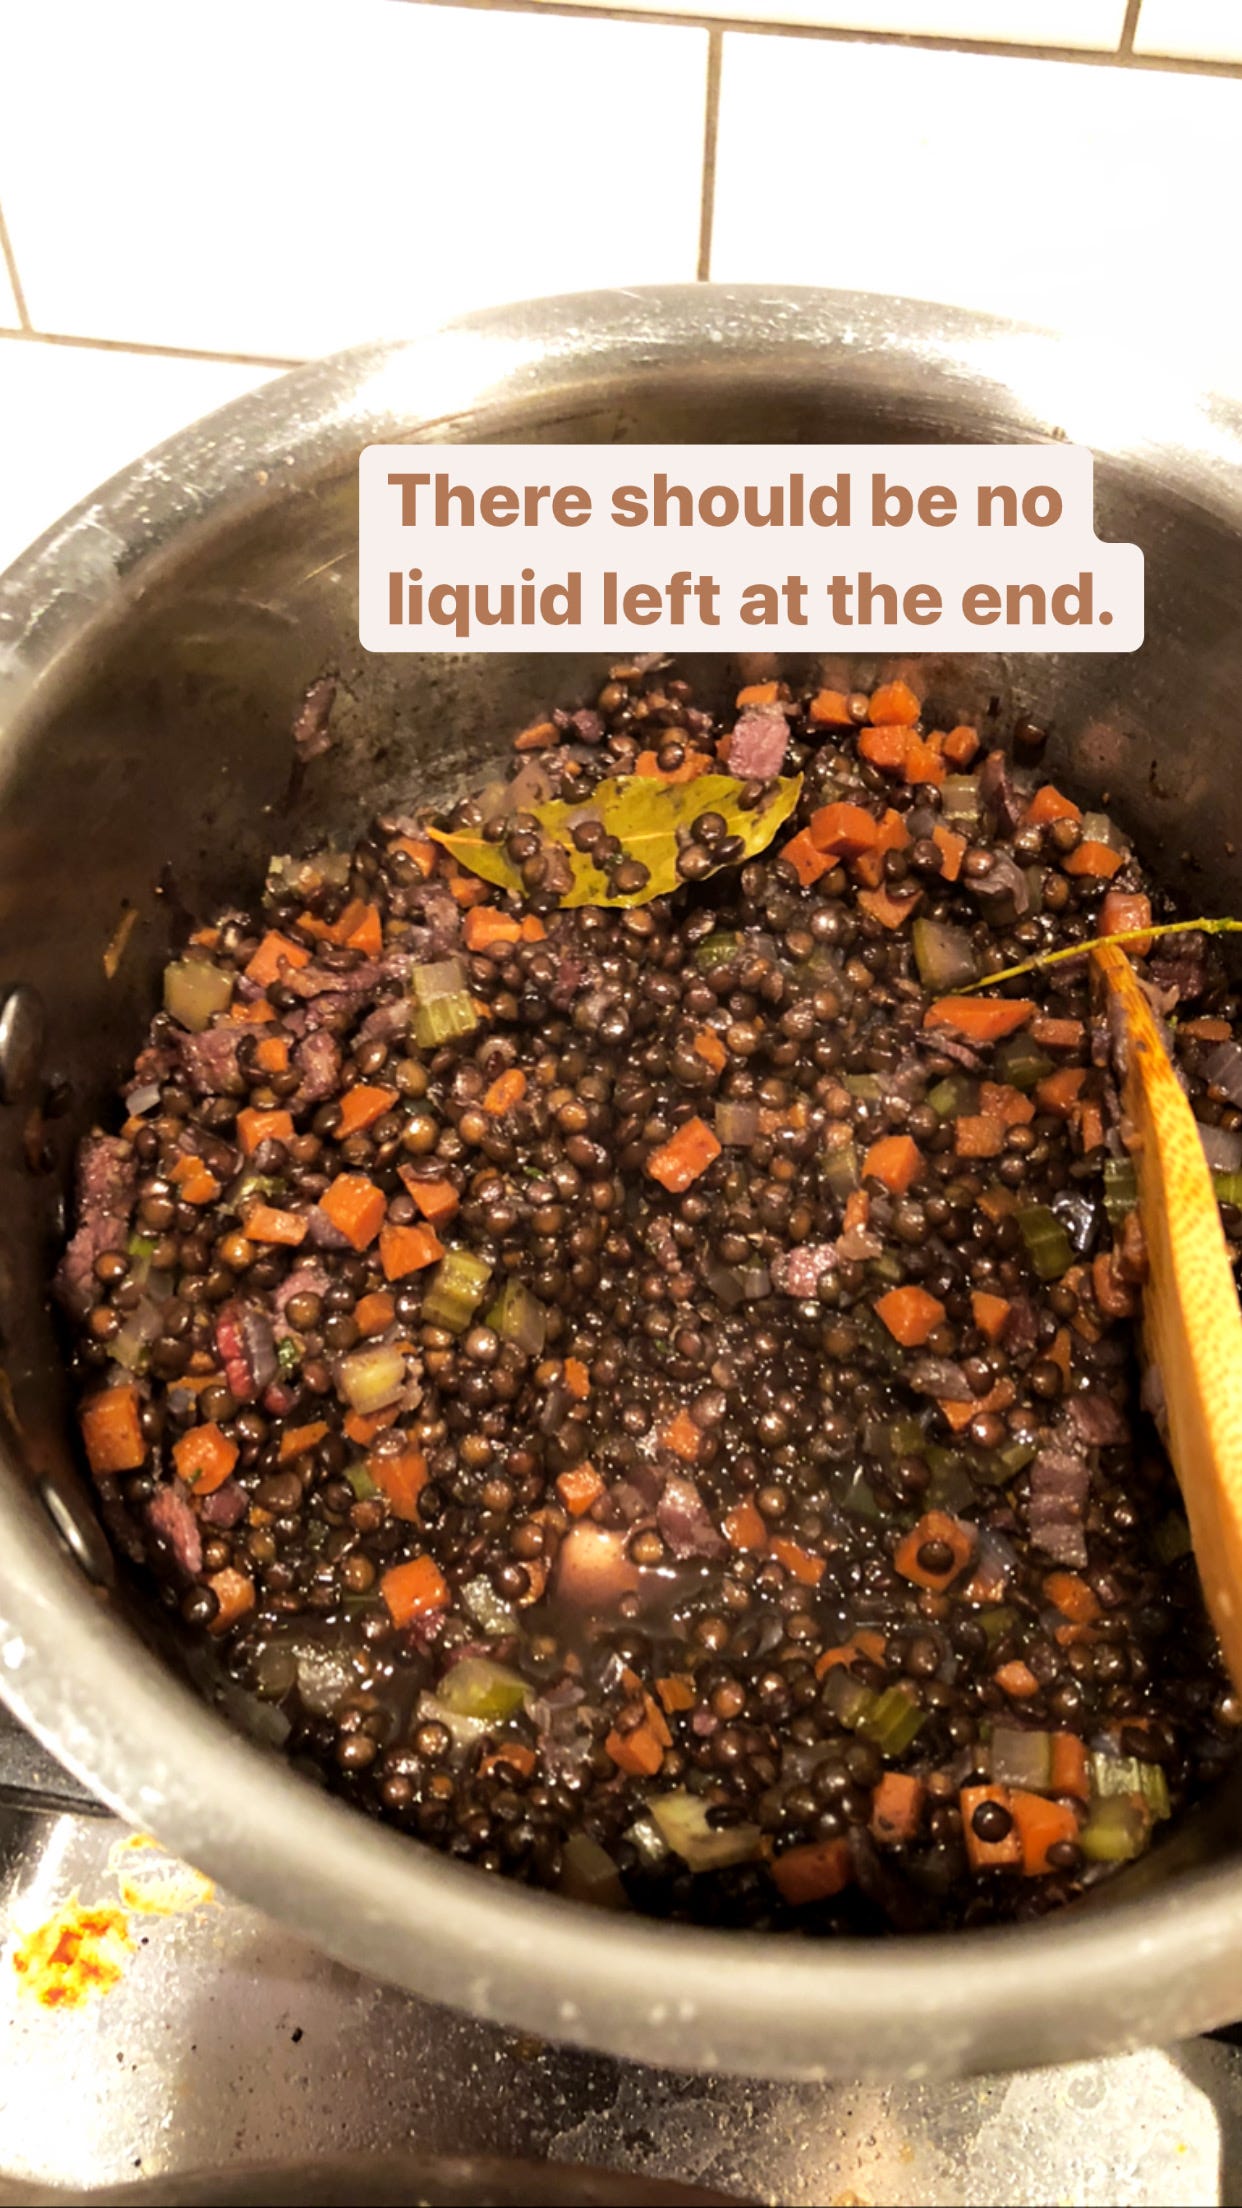 Finished lentils